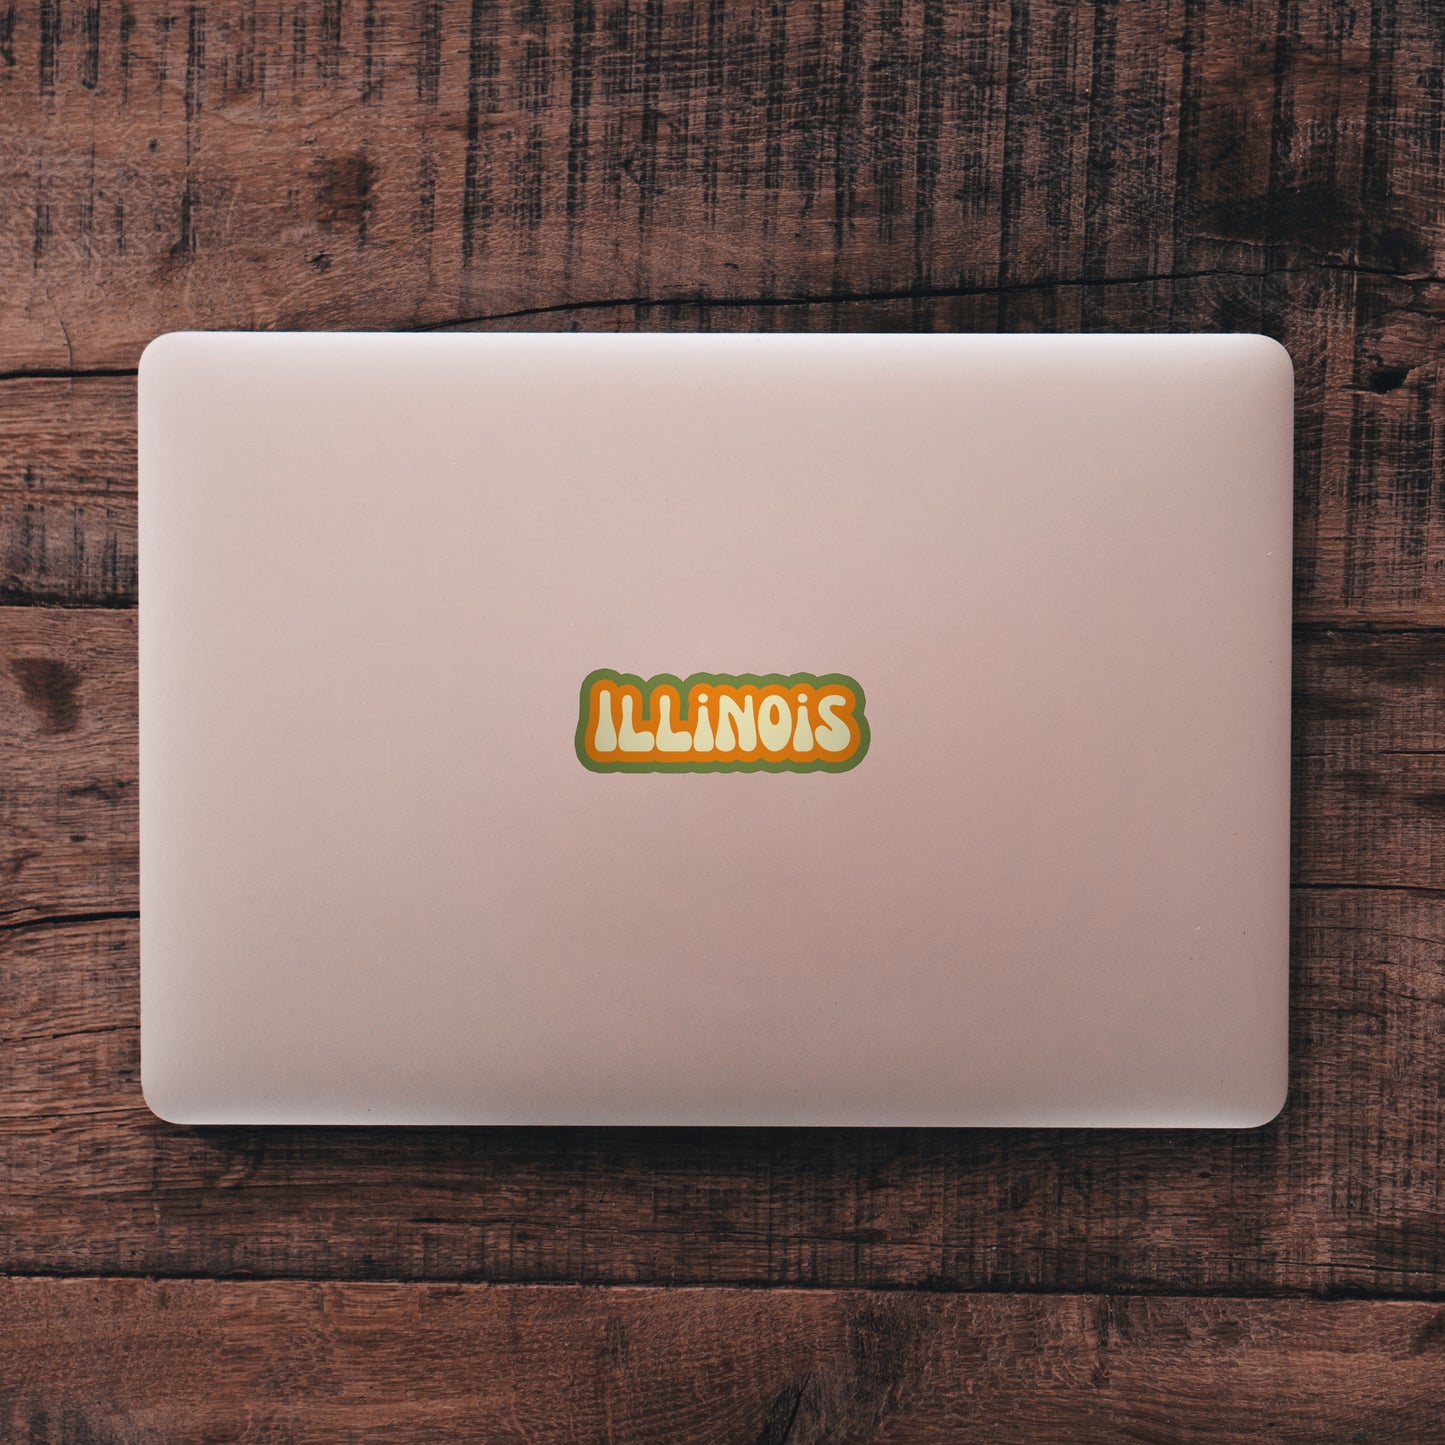 Illinois Cloud Sticker